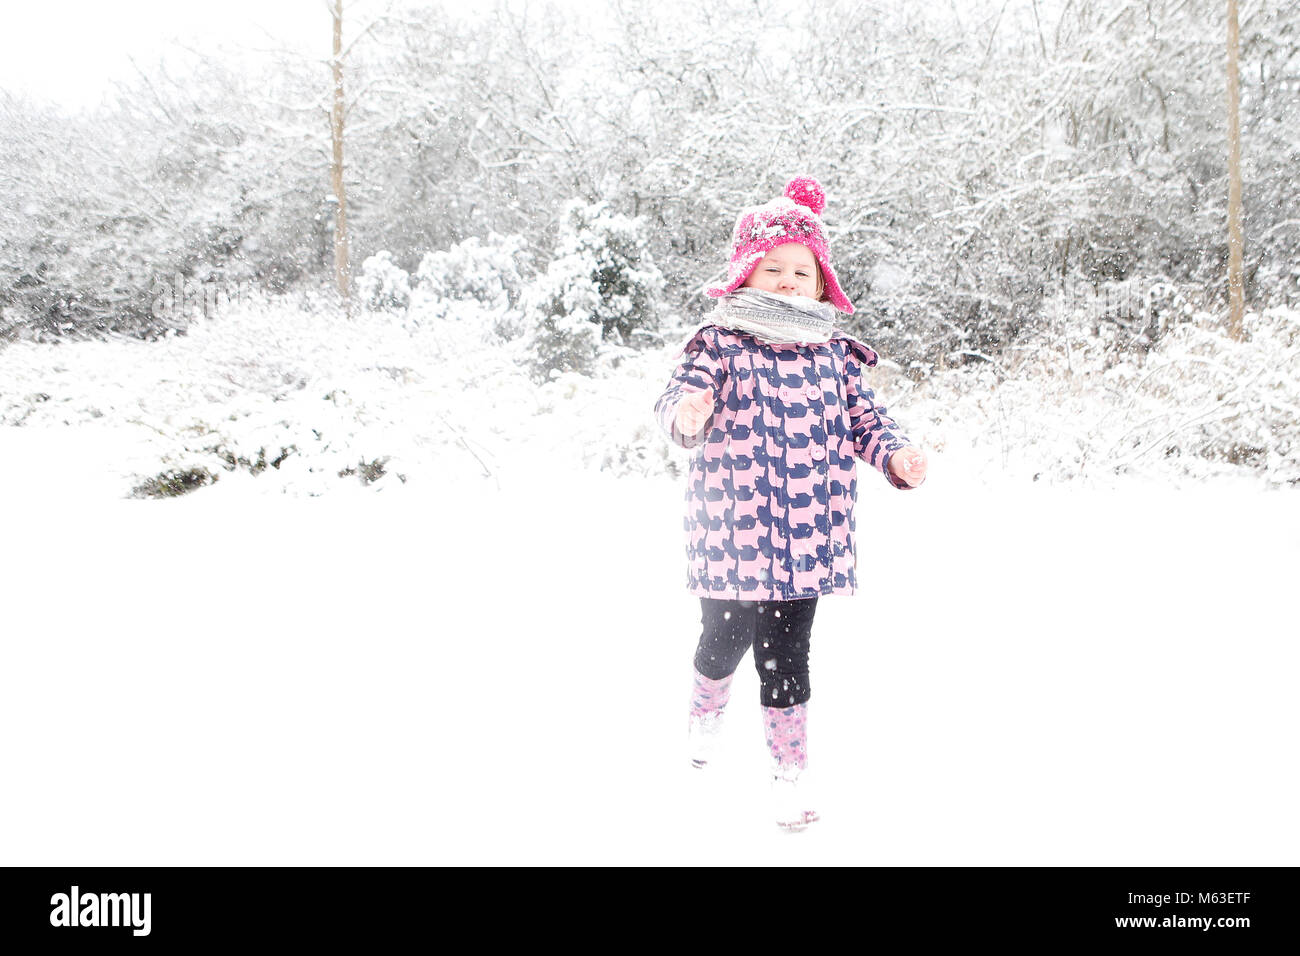 Cambridge, Reino Unido. 28 de febrero de 2018. Ivy Mitchell 2 1/2 años de edad juega en la nieve cerca de Cambridge, Reino Unido. Crédito: Jason Mitchell/Alamy Live News. Foto de stock